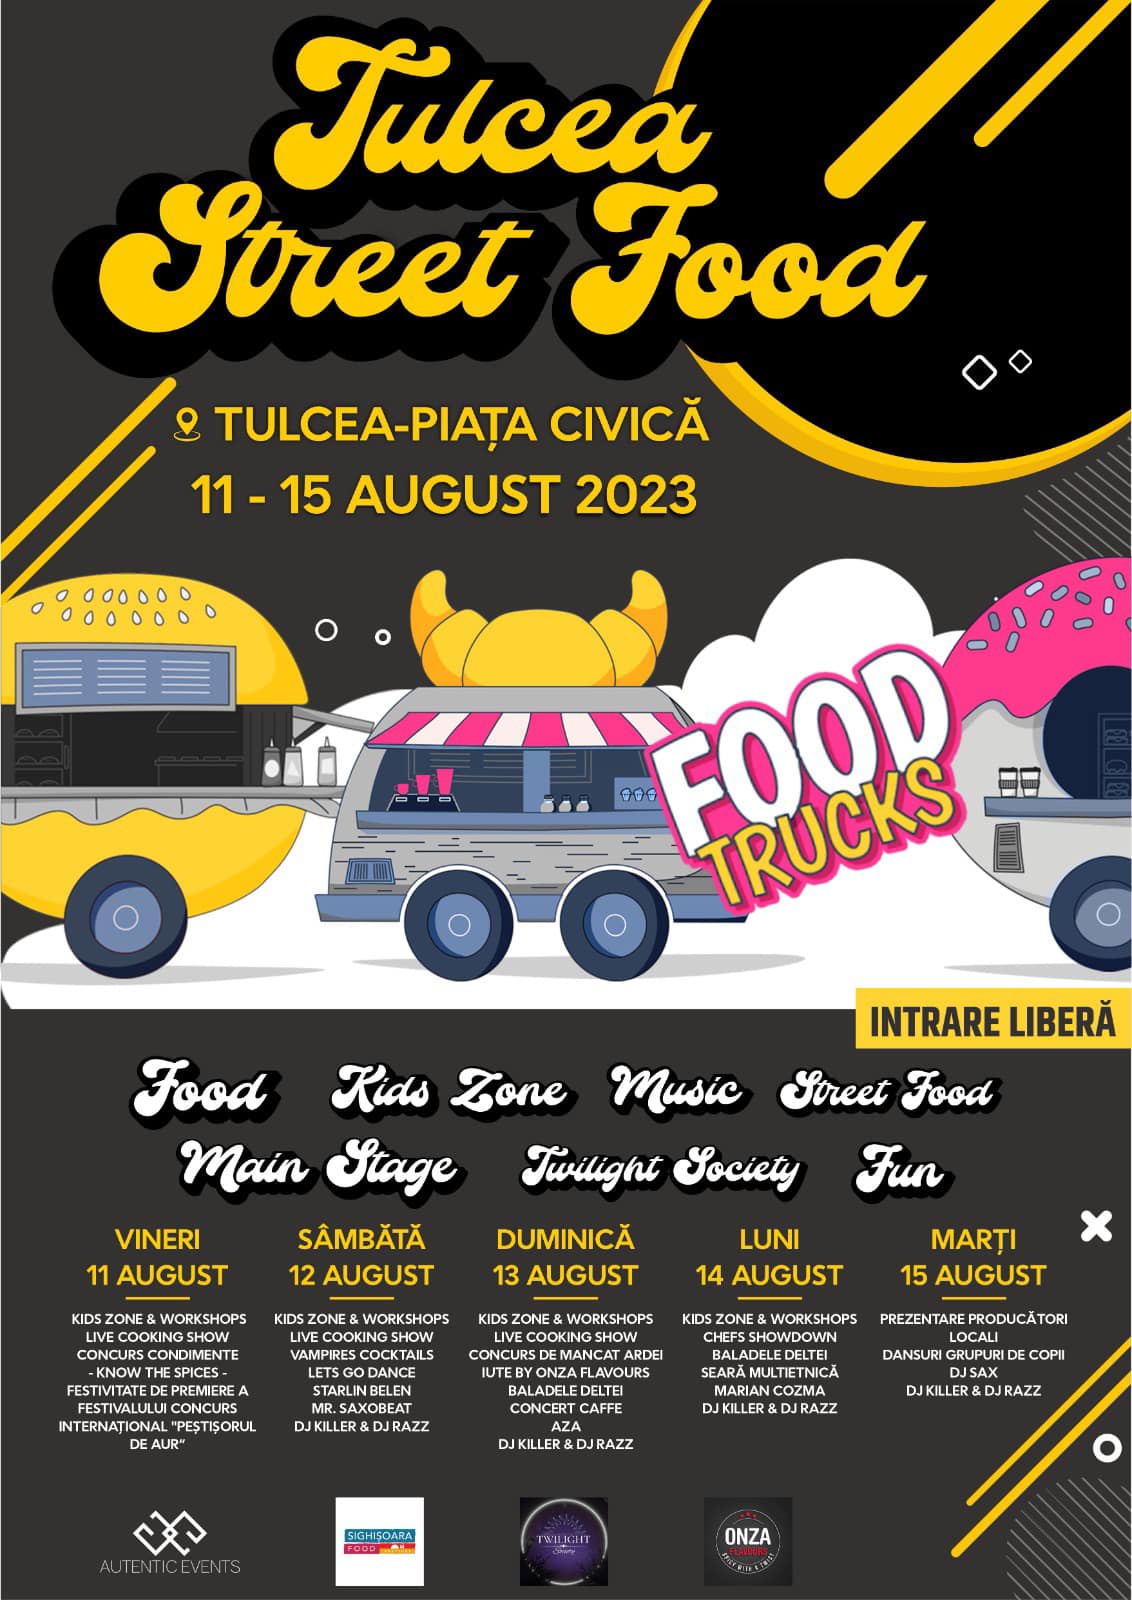 Tulcea Street Food Fest 2023 in Tulcea